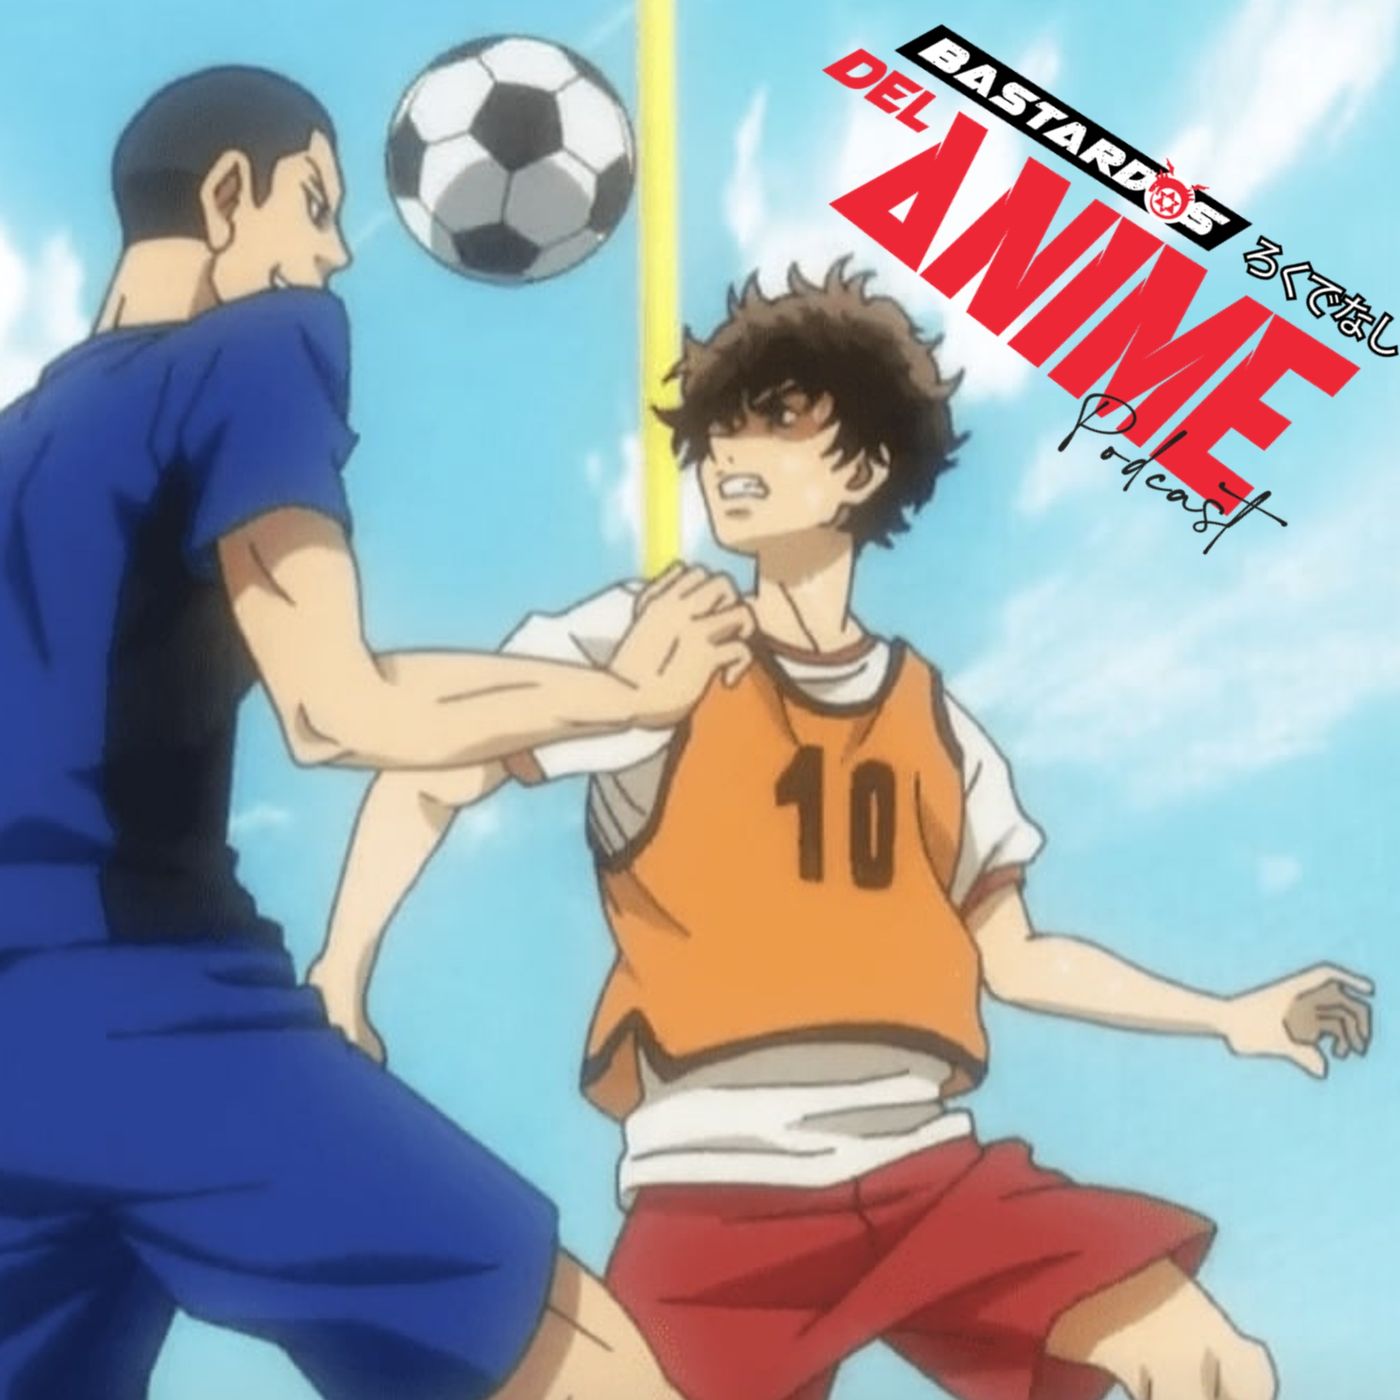 Aoashi puede ser ese anime de fútbol que llevabas tanto tiempo esperando